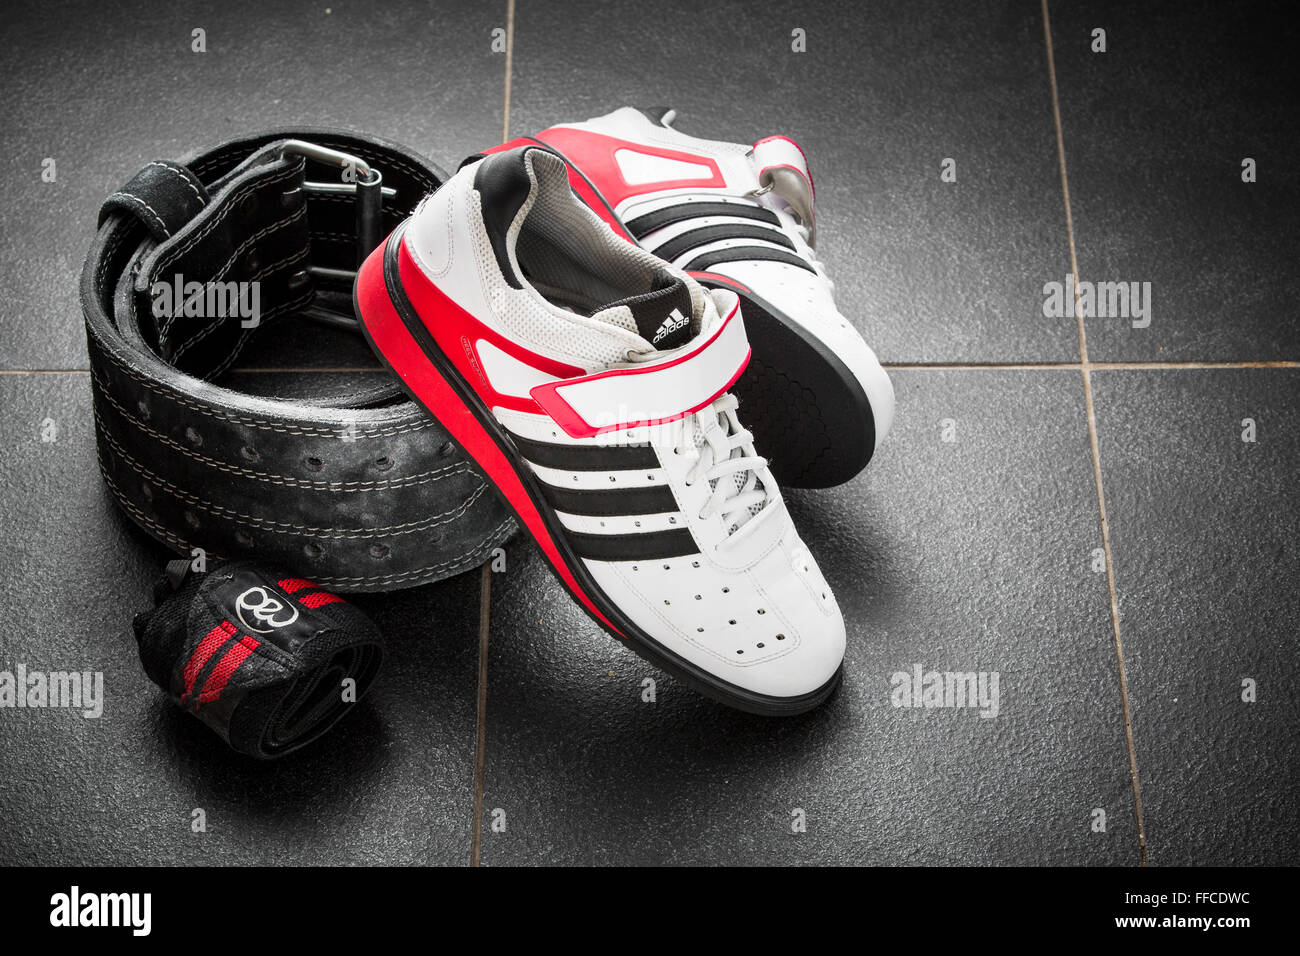 Adidas zapatos weightlifting Olímpico sobre un suelo de baldosas de color gris con un de halterofilia y Fotografía stock Alamy